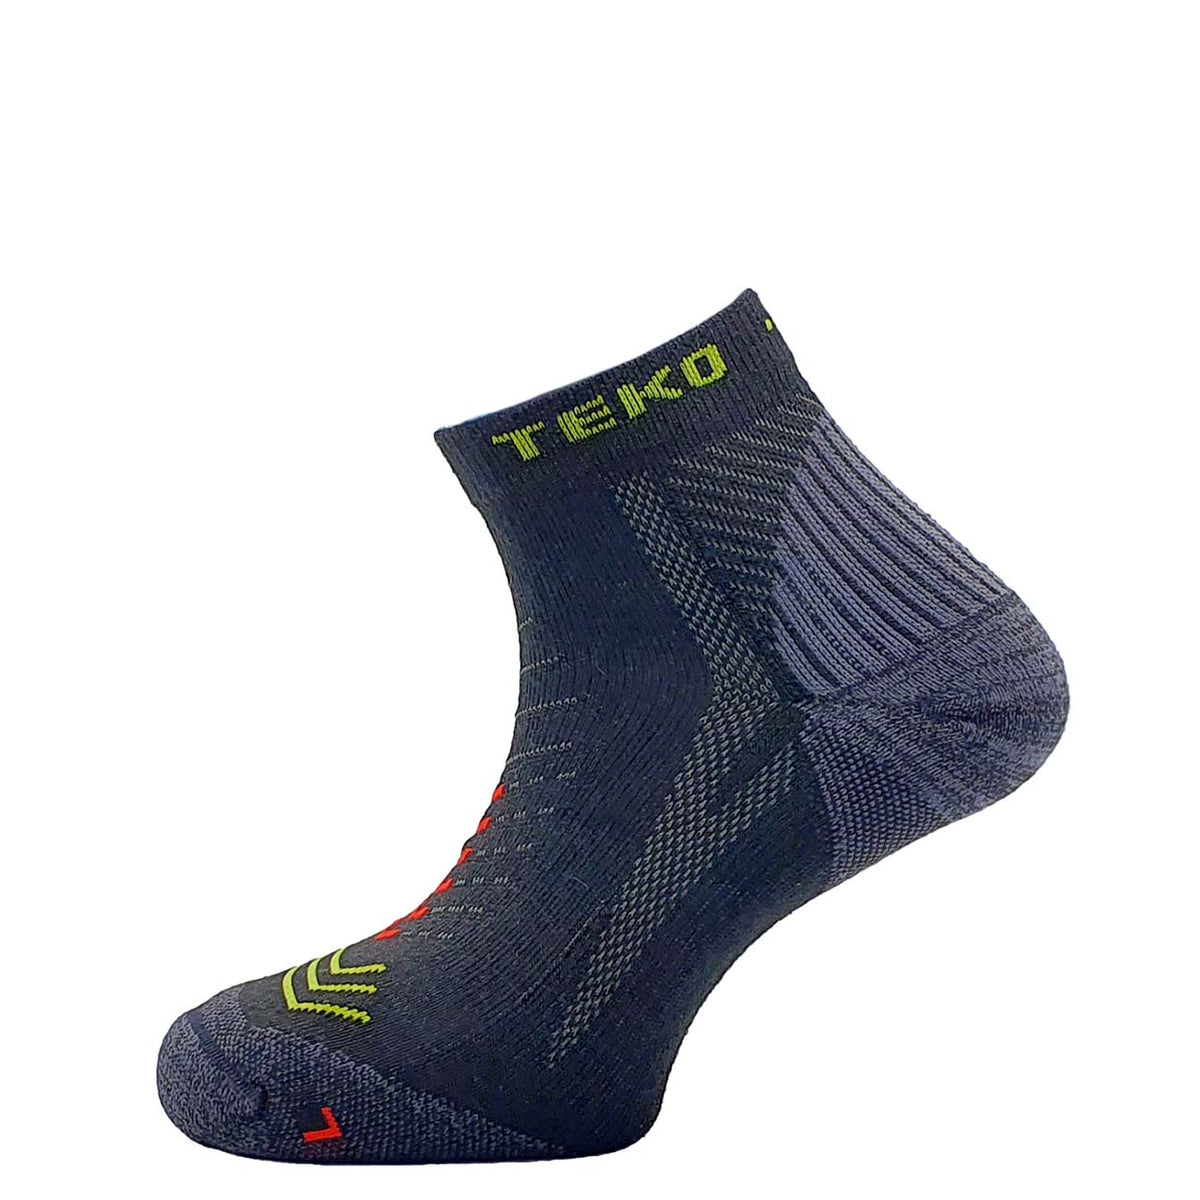 TEKO eco RUN 2.0 MERINO ENDURO Light Half Cushion Running Socks